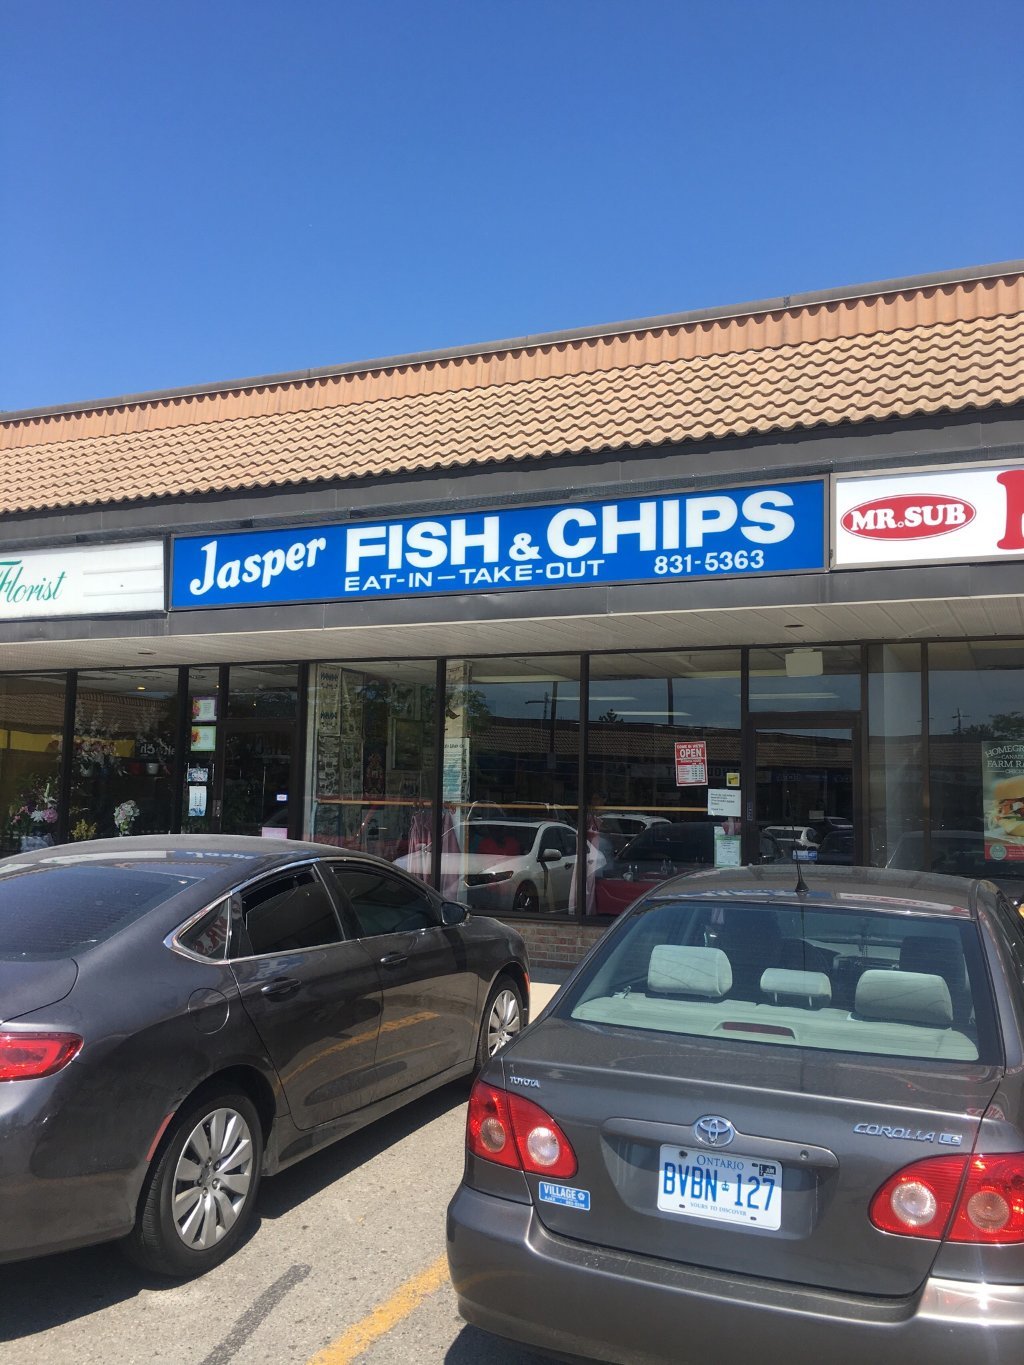 Jasper Fish & Chips